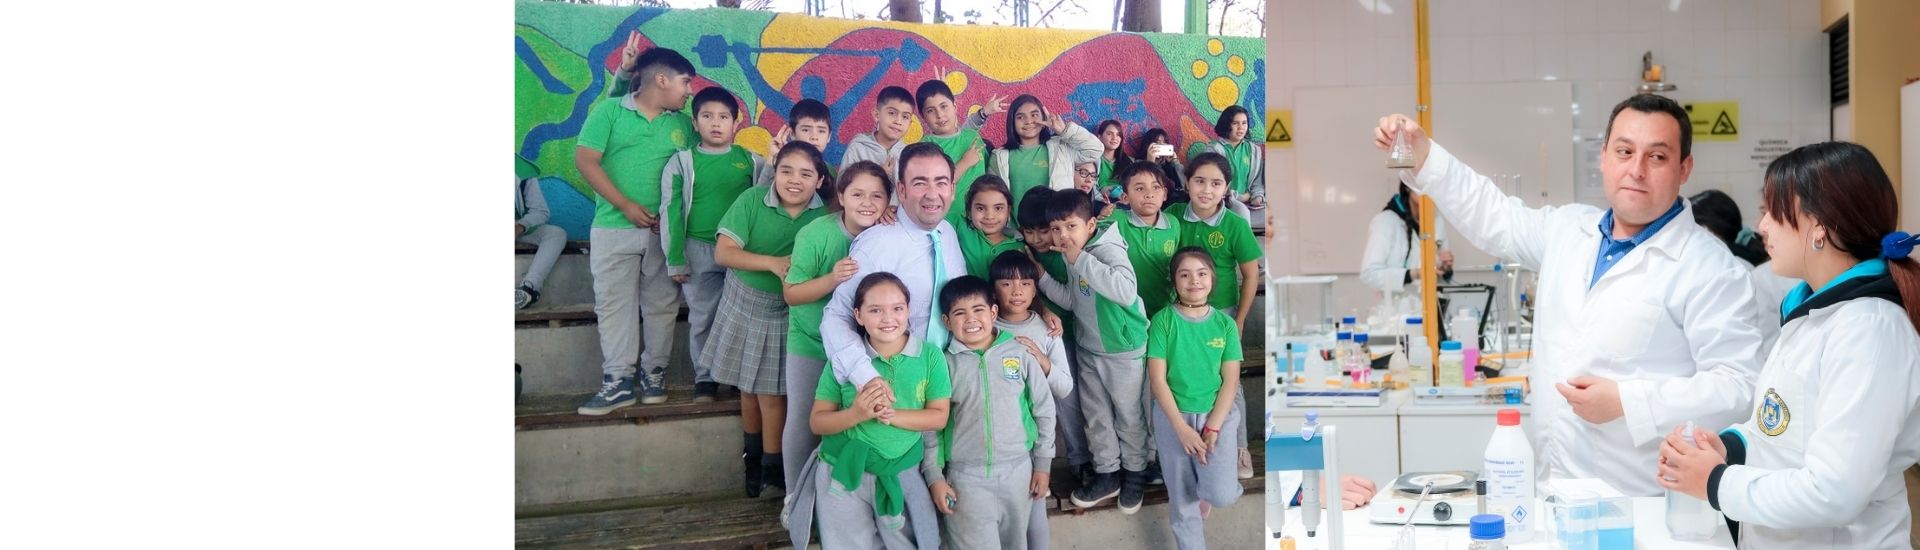 dos colegios chilenos seleccionados para la semana mundial de la educación